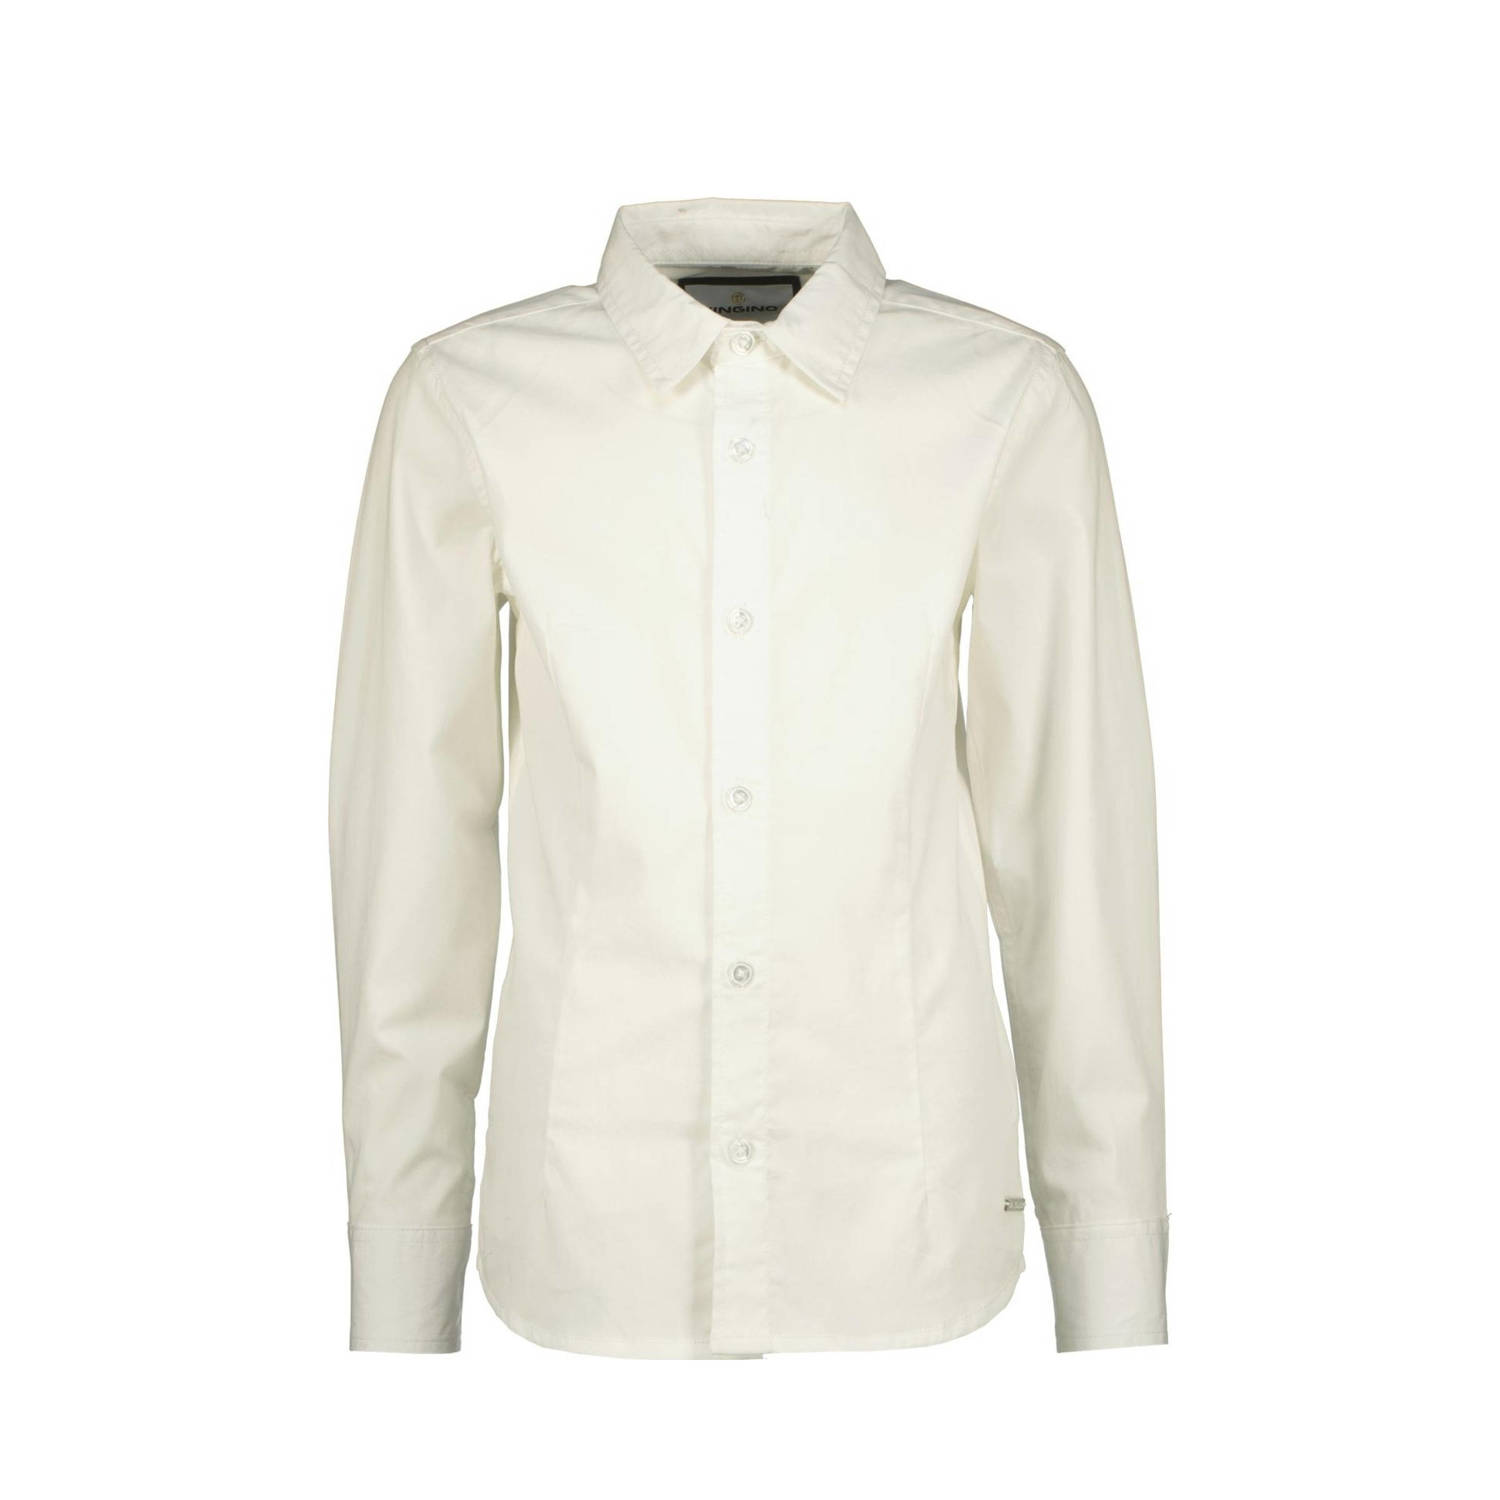 VINGINO overhemd Lasic wit T-shirt Jongens Katoen Klassieke kraag Effen 104